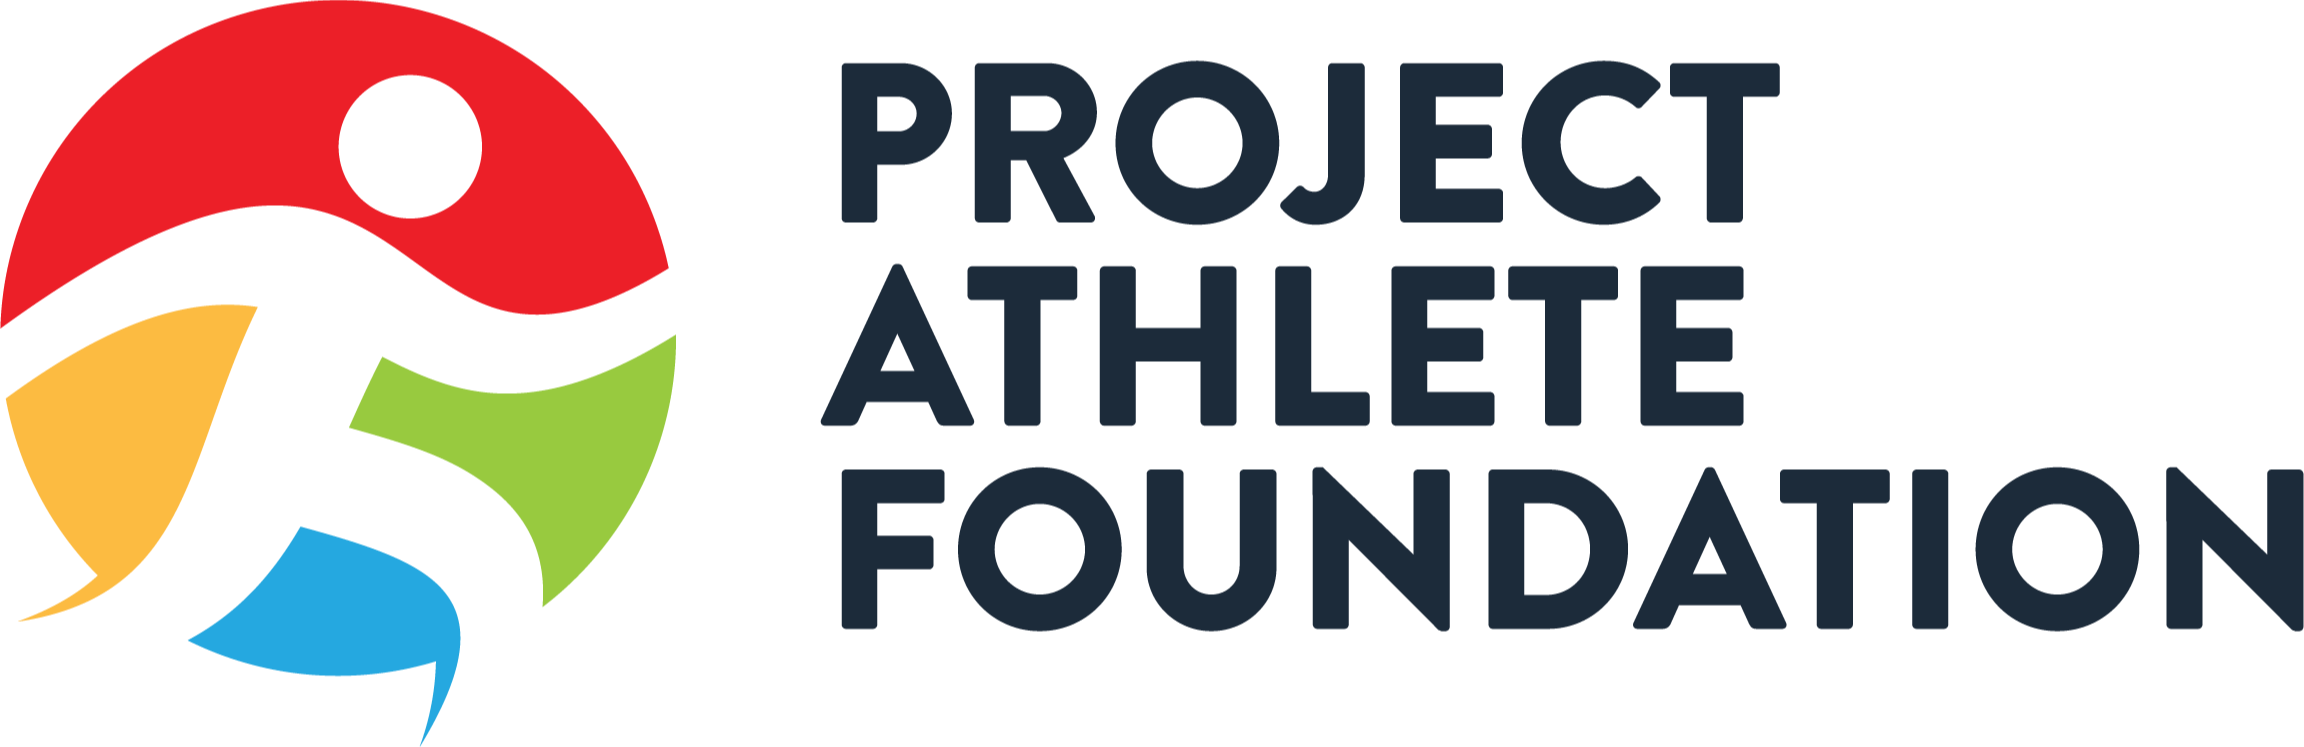 Project Athletes Foundation logo